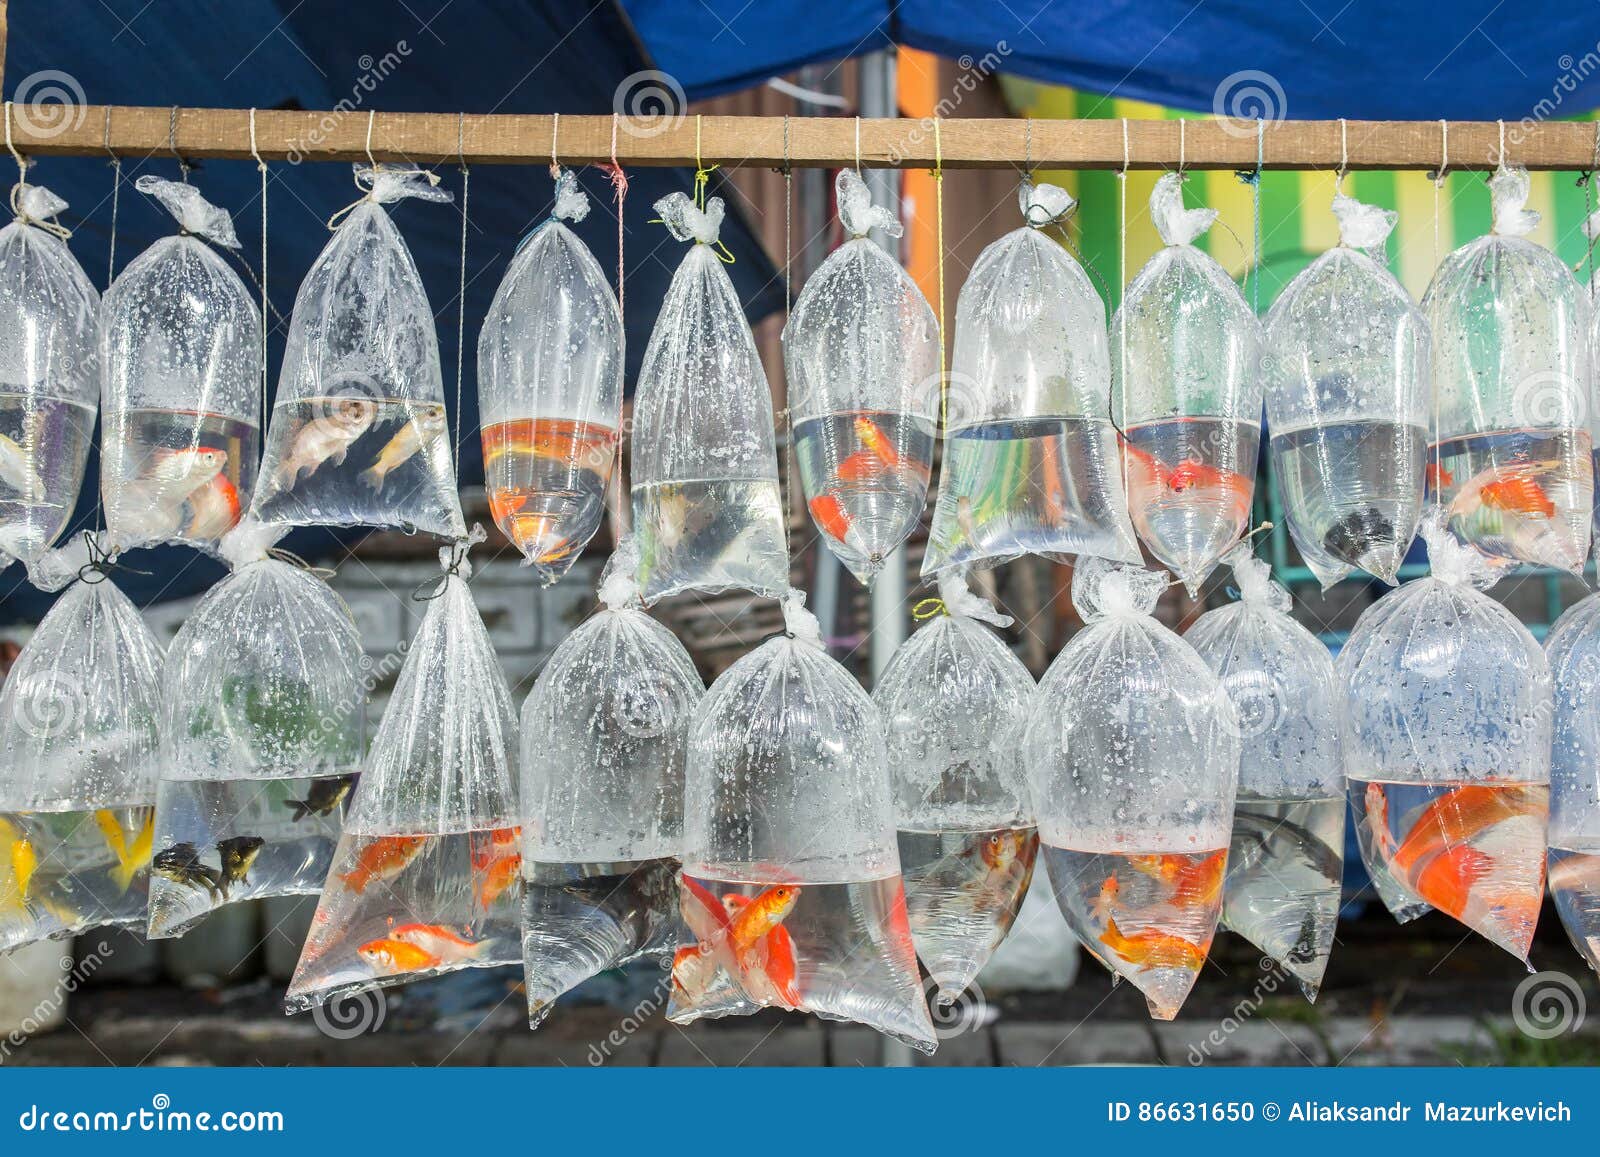 Aquarium Fish Displayed in Plastic Bags for Sale in Local Market